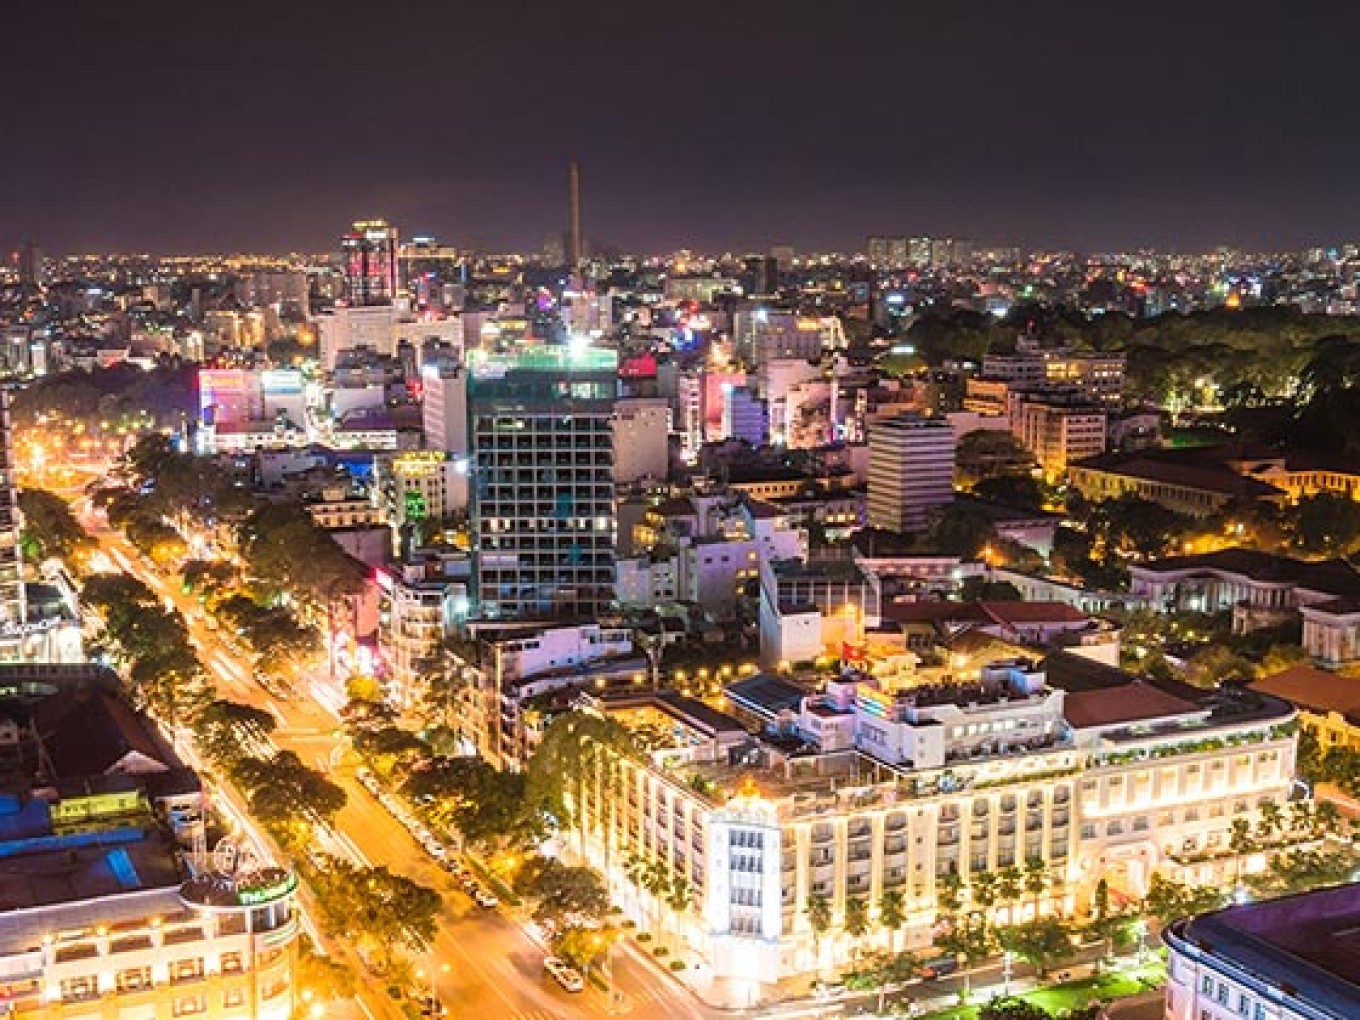 Ho Chi Minh City at Night